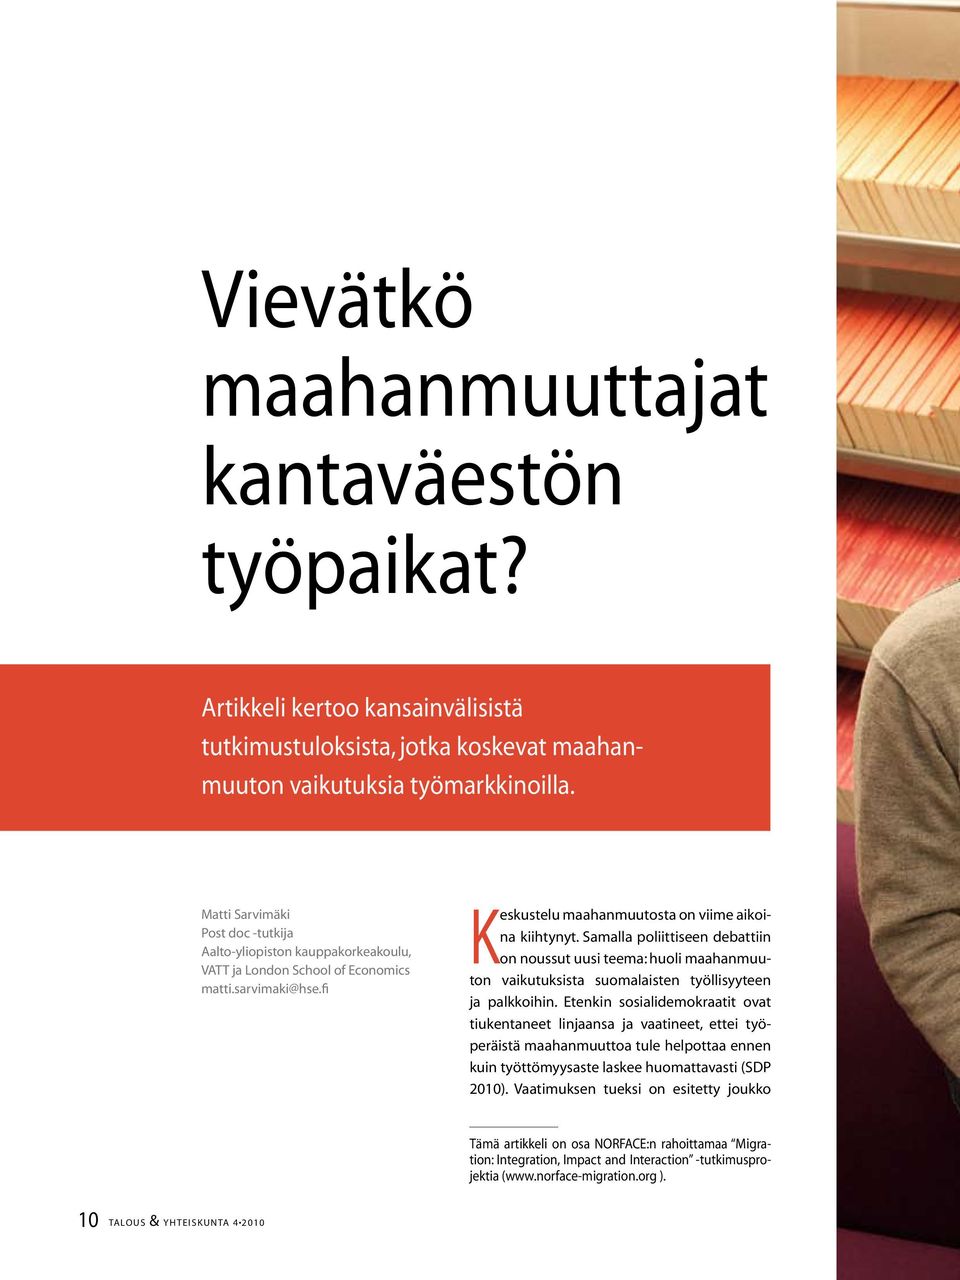 Samalla poliittiseen debattiin on noussut uusi teema: huoli maahanmuuton vaikutuksista suomalaisten työllisyyteen ja palkkoihin.